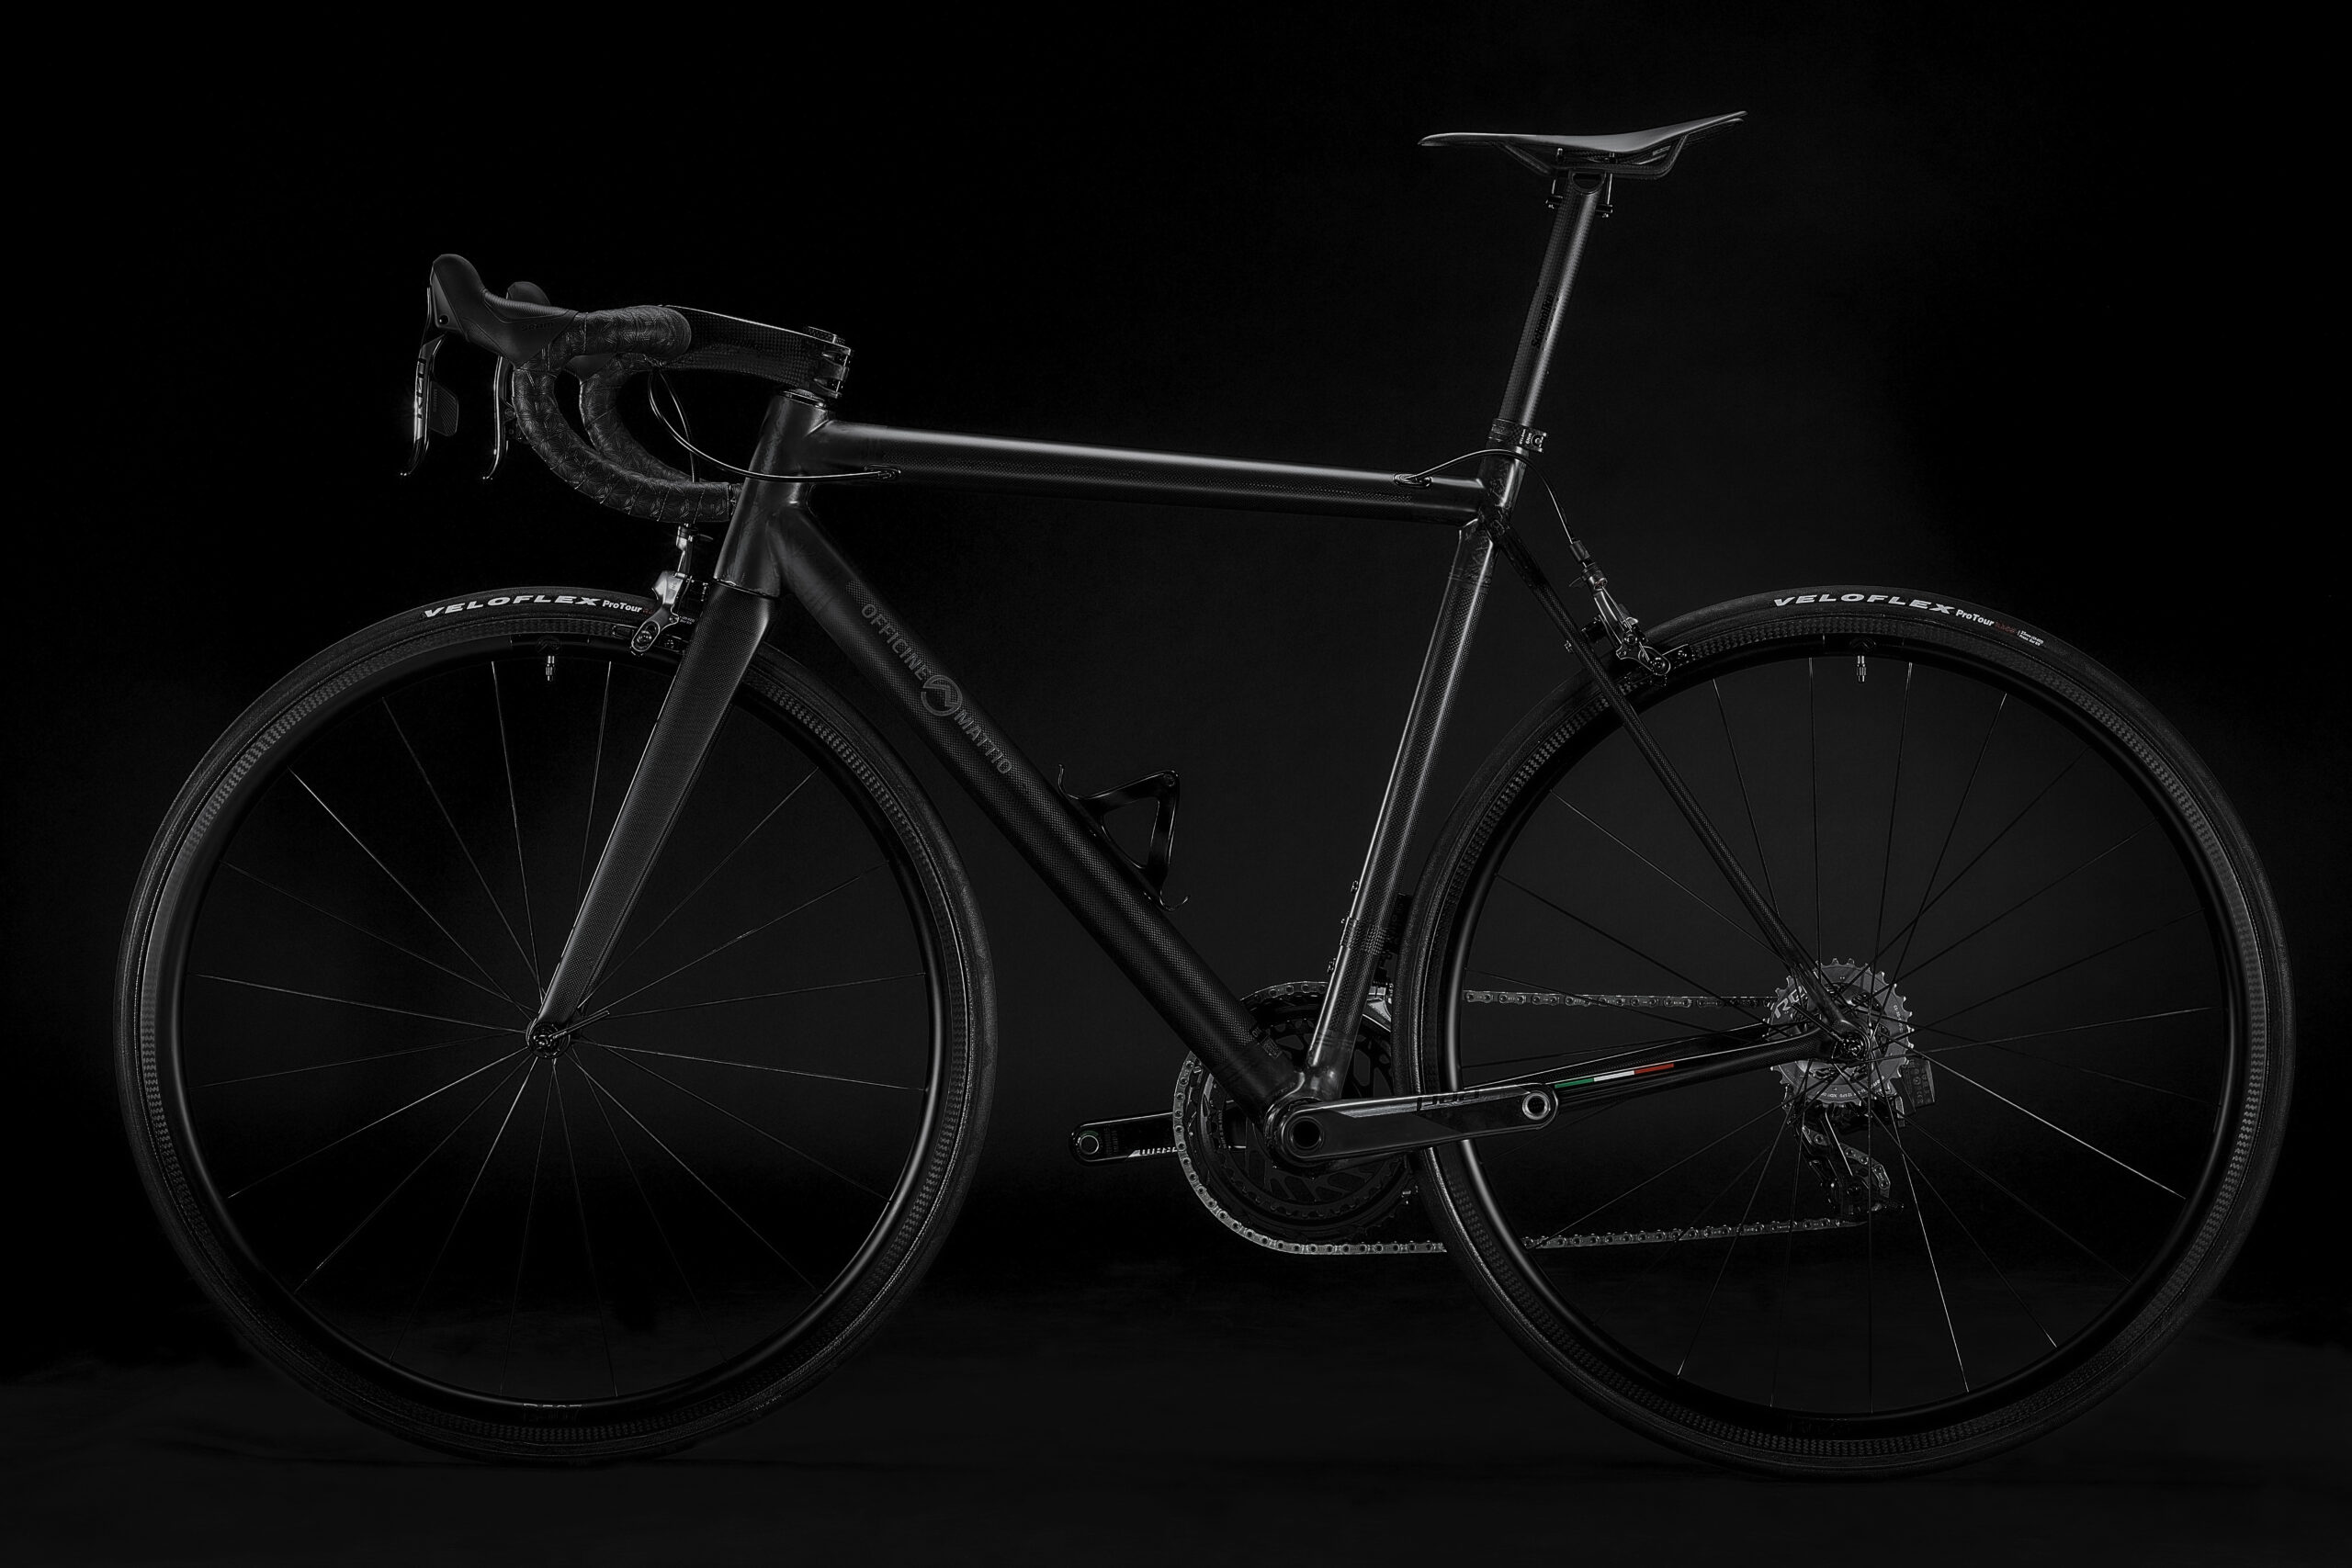 Bicicletta Officine Mattio modello SL in fibra di carbonio, produzione made in italy fotografia dettaglio laterale 01